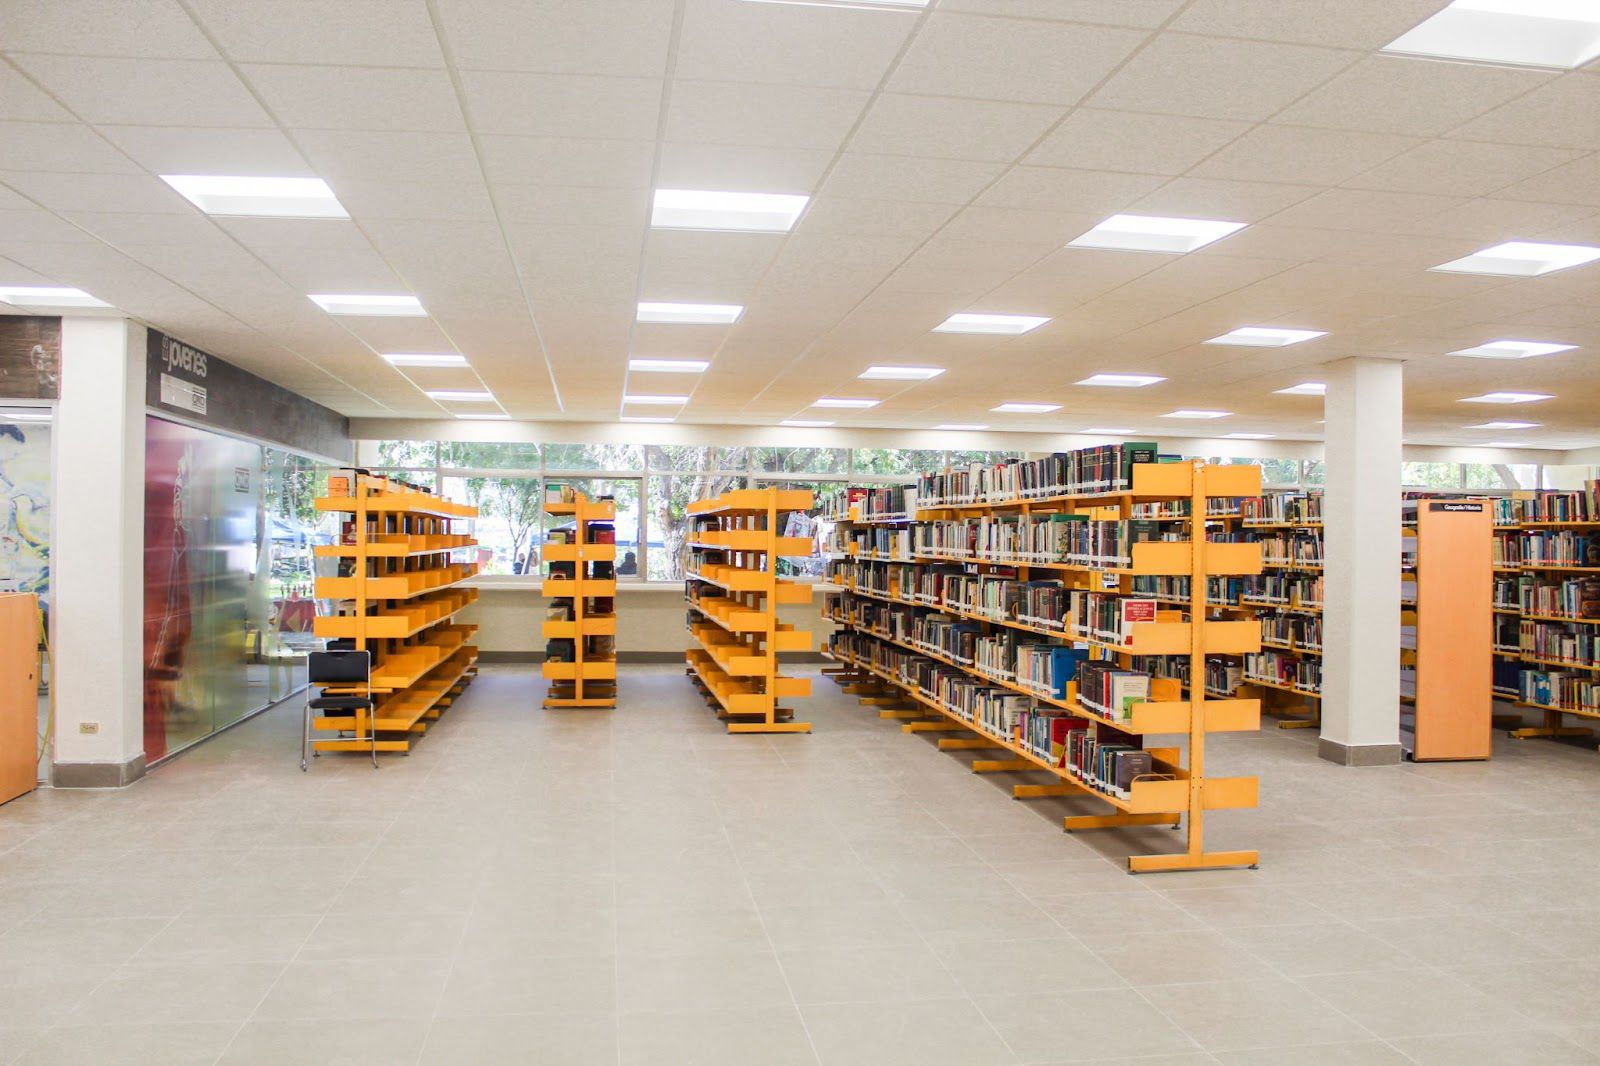 Culmina SIDURT modernización de biblioteca pública Benito Juárez en Tijuana a beneficio de más de 100 mil habitantes